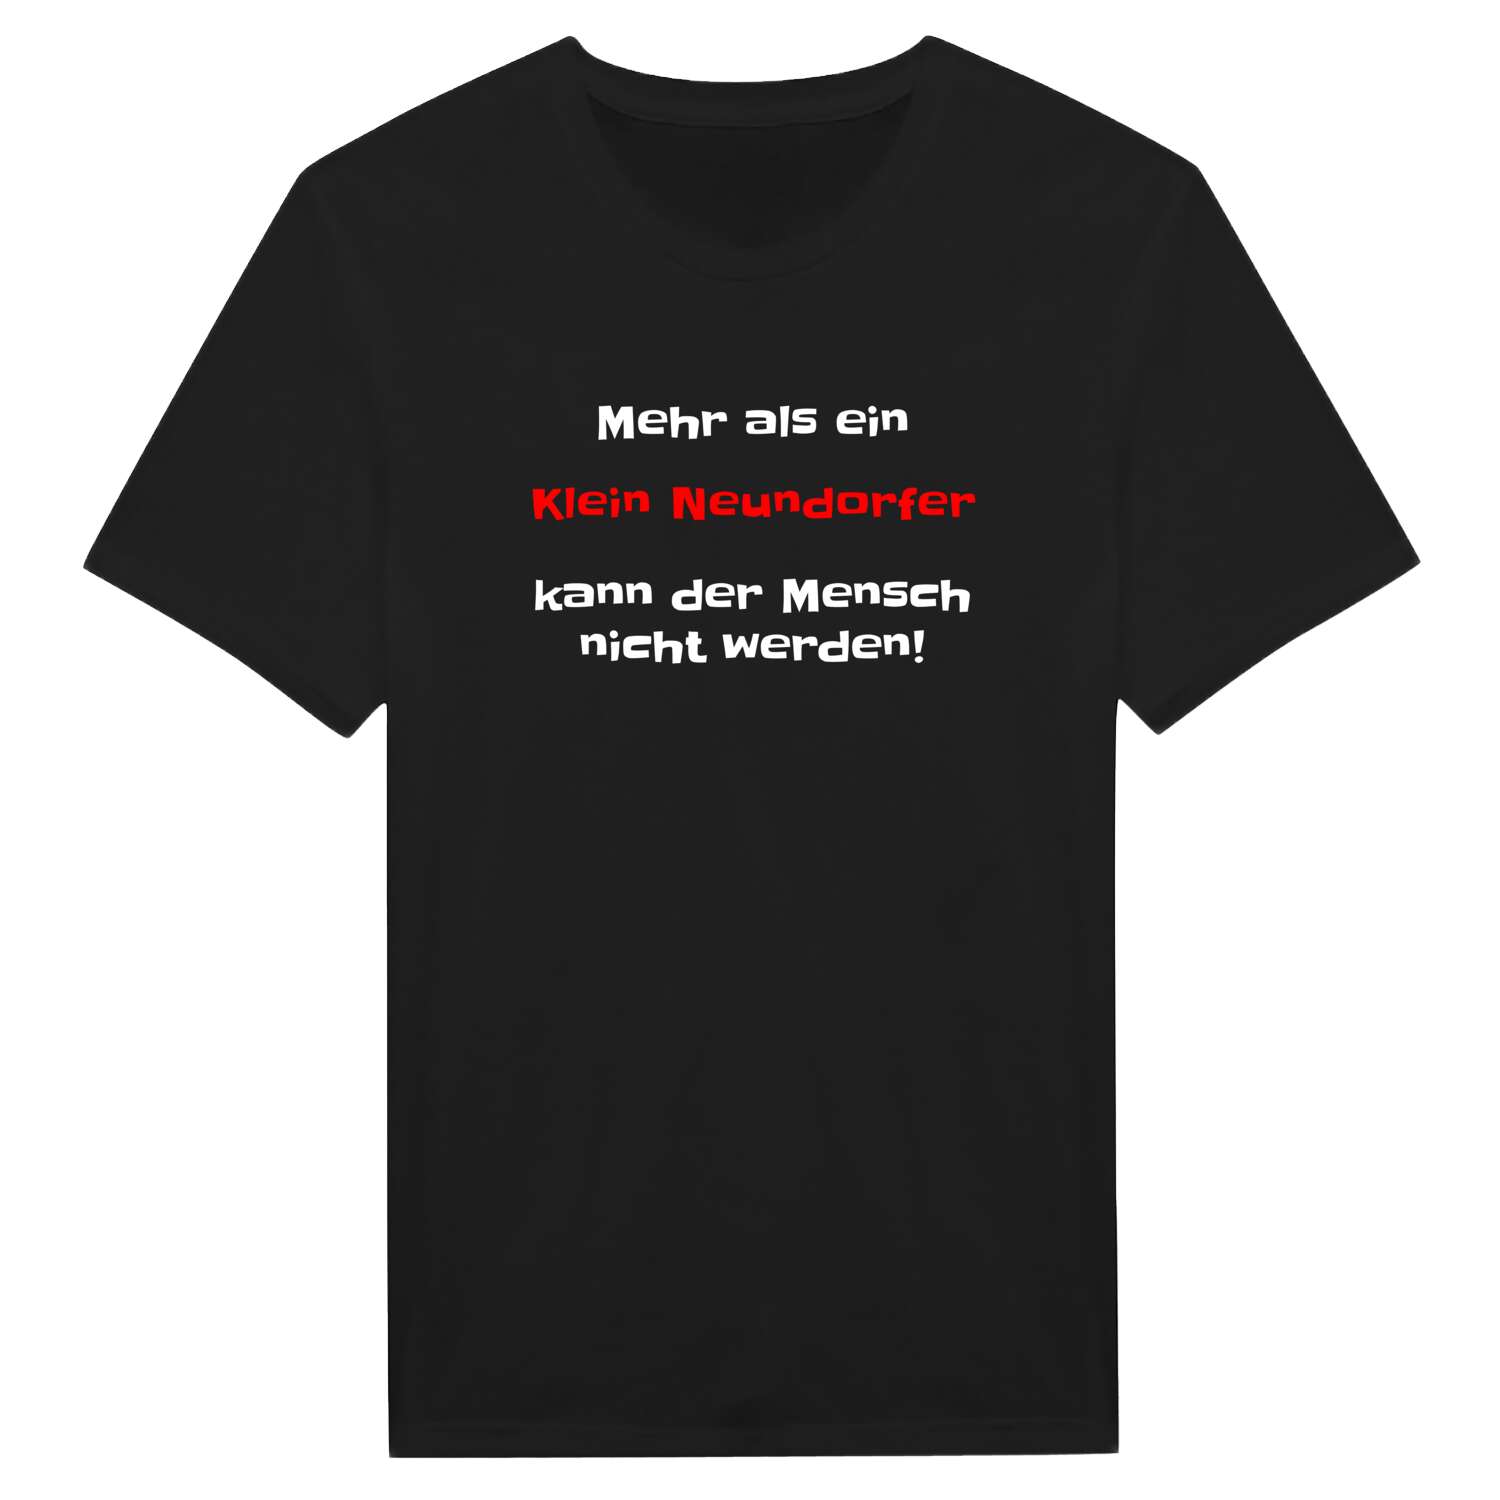 Klein Neundorf T-Shirt »Mehr als ein«